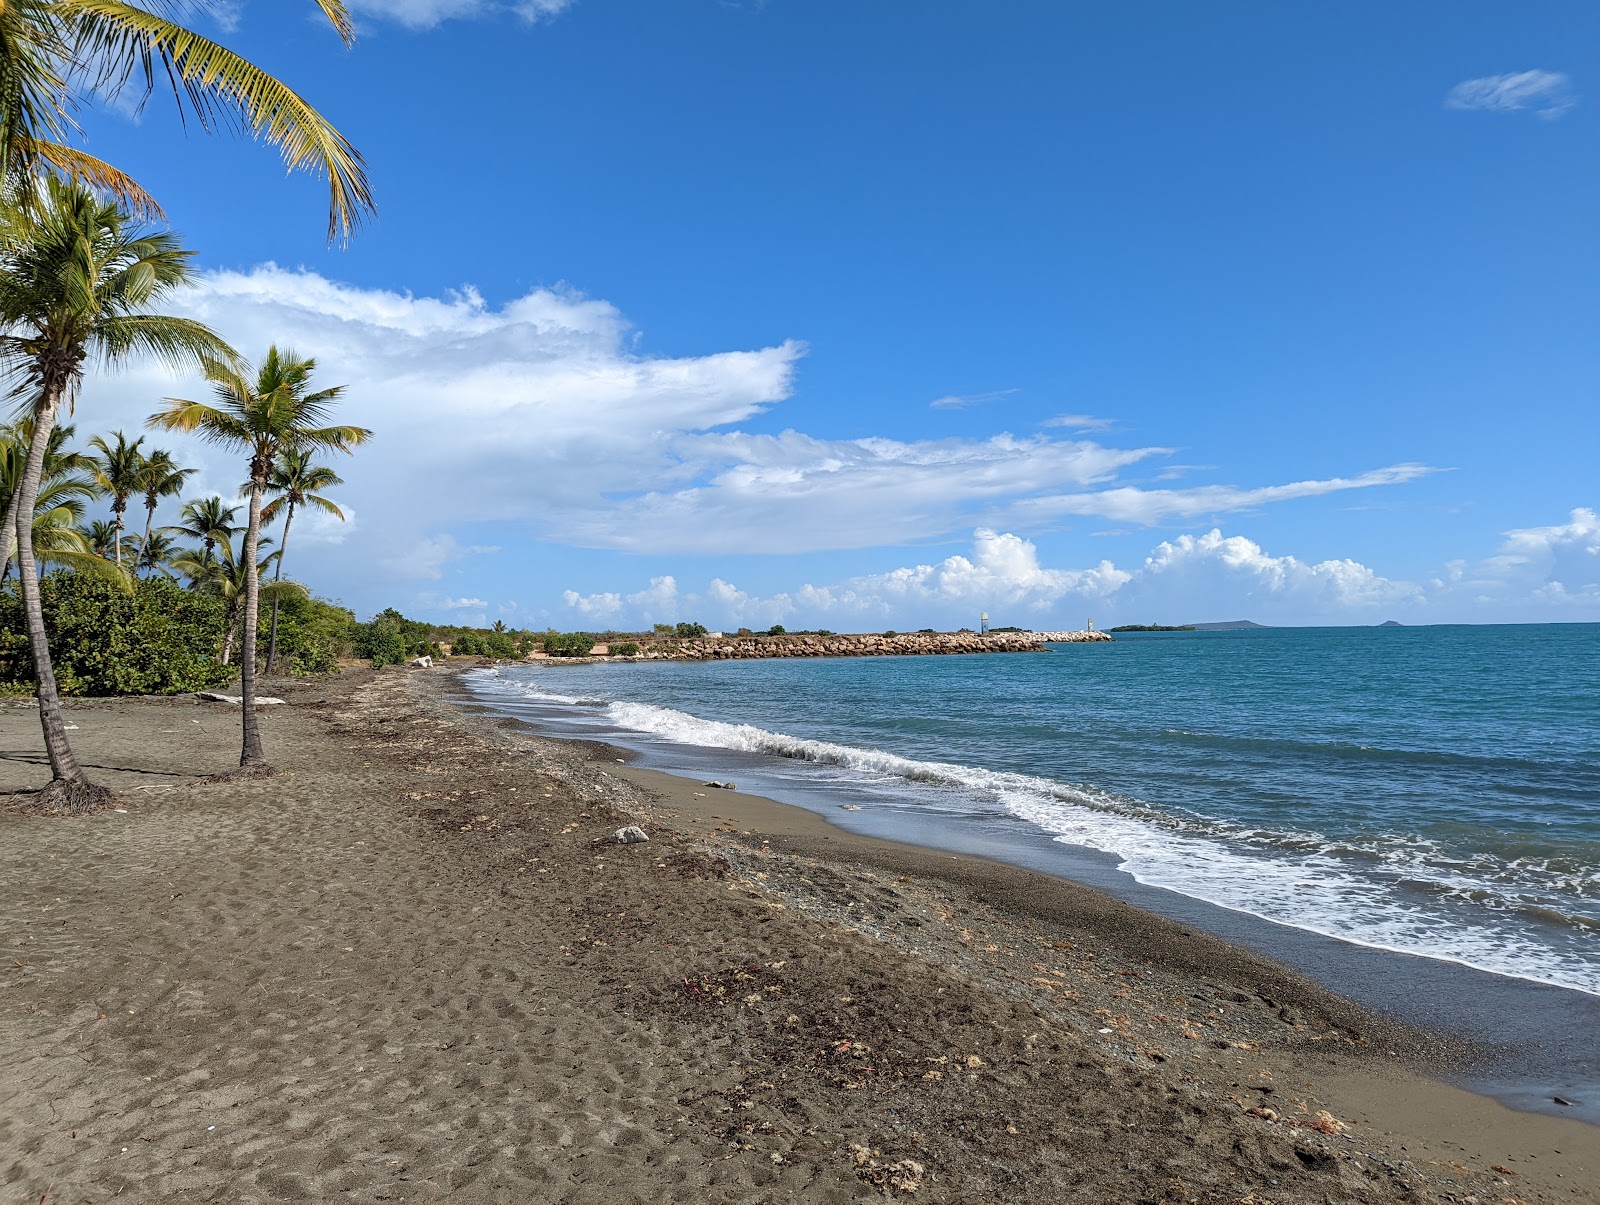 Fotografie cu Playa Hilton Ponce cu o suprafață de nisip gri și pietricel